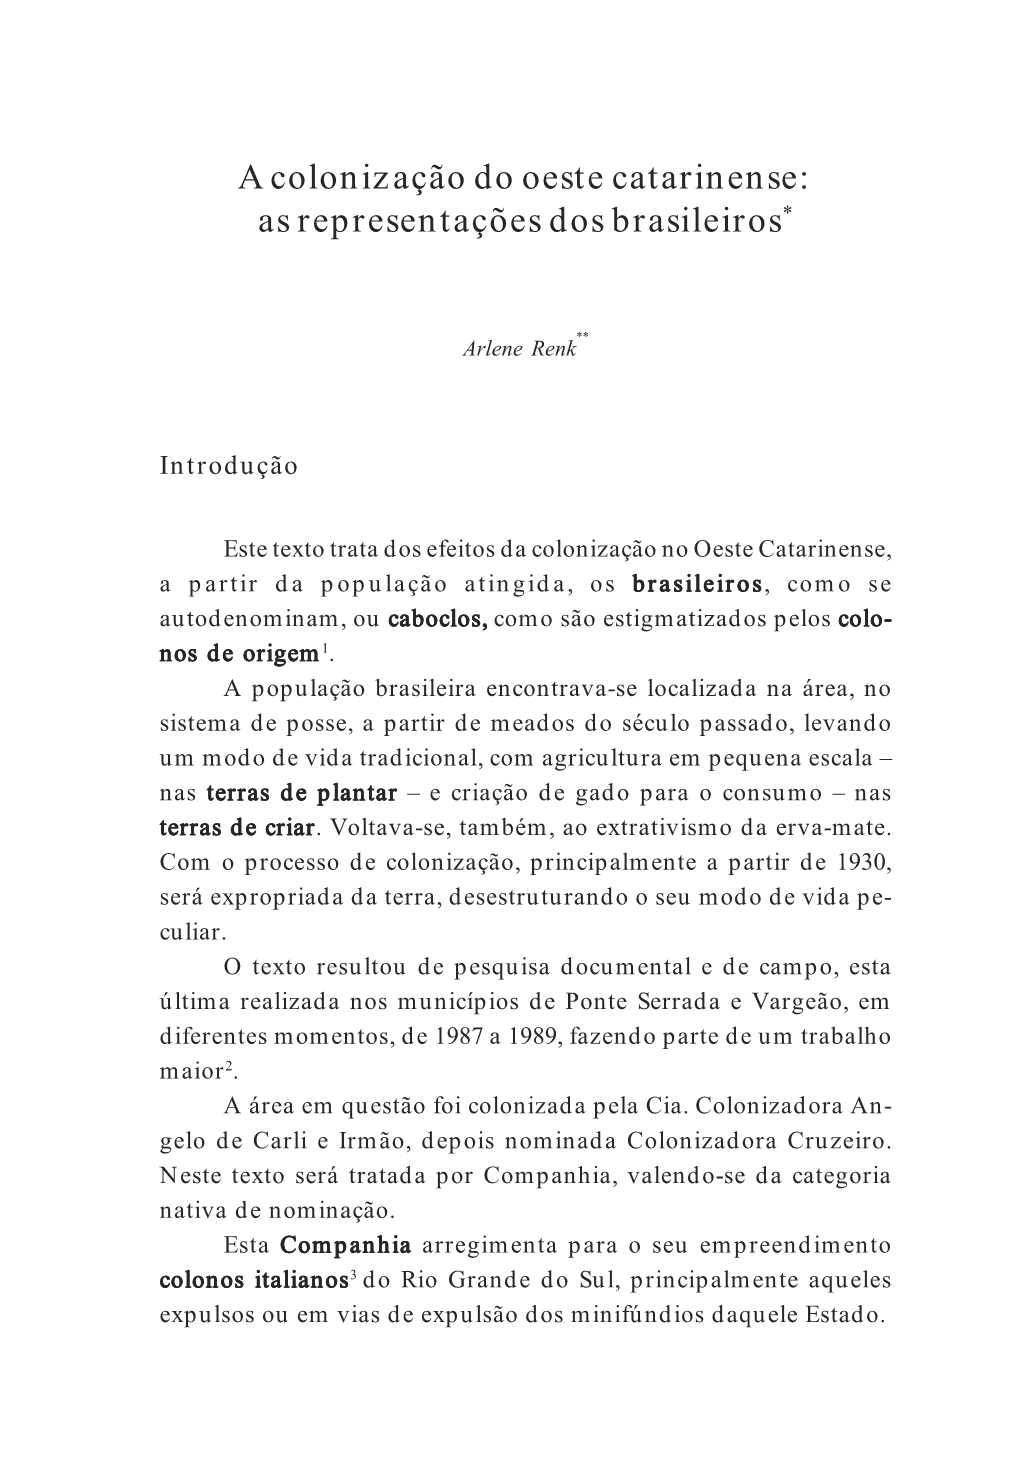 A Colonização Do Oeste Catarinense: As Representações Dos Brasileiros*